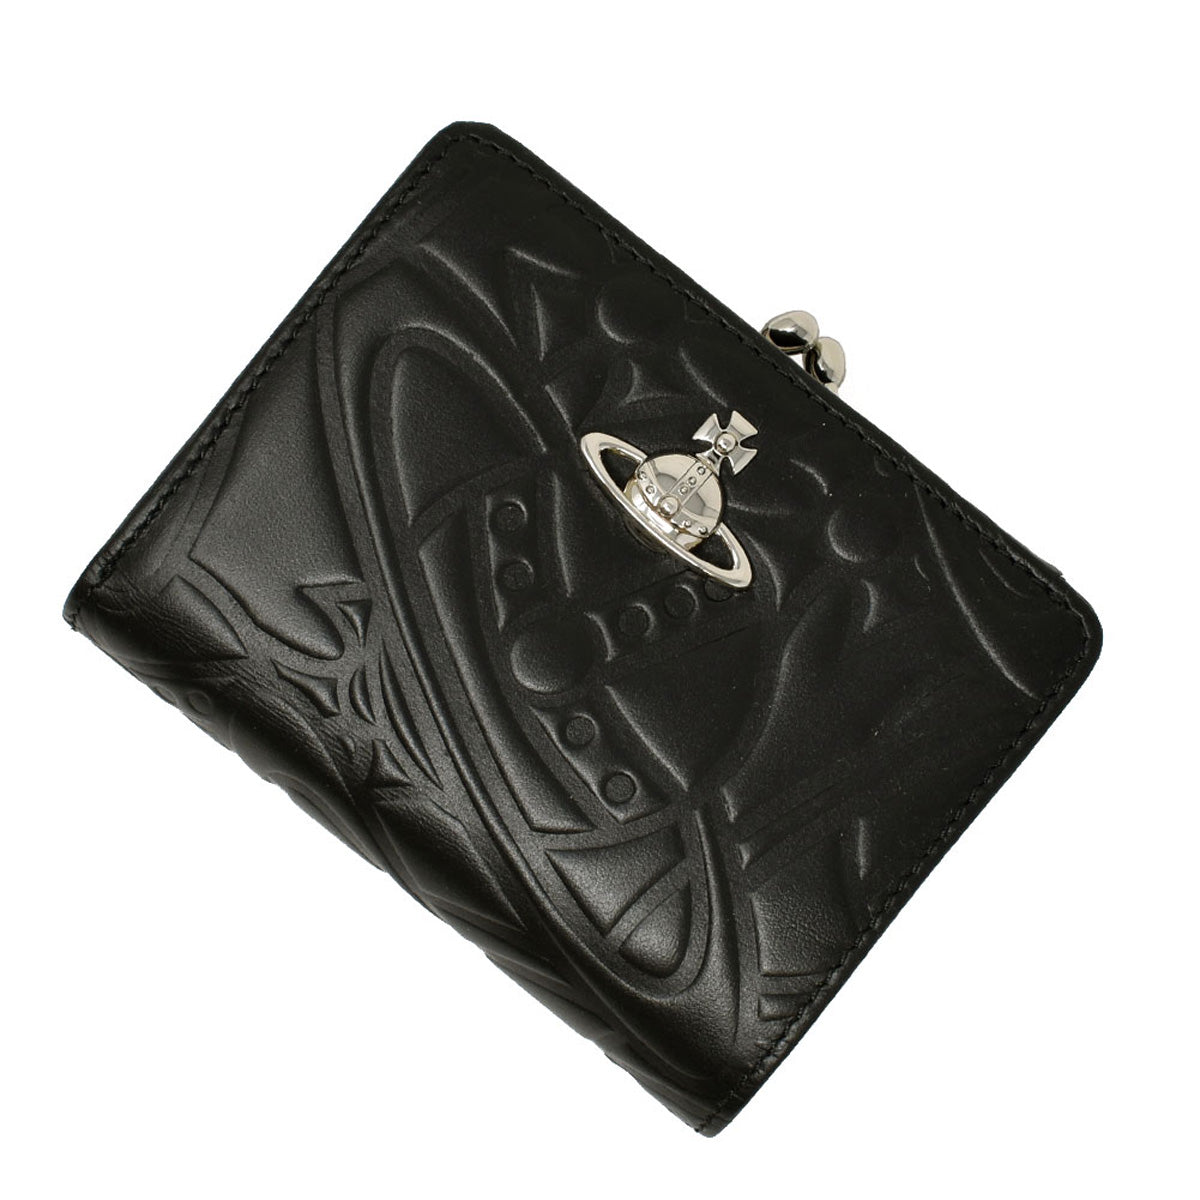 Vivienne Westwood ヴィヴィアンウエストウッド 財布 レディース 二つ折り財布 がま口 BLACK ブラック  51010020-41227-N401 PIMLICO WALLET ピムリコ ウォレット